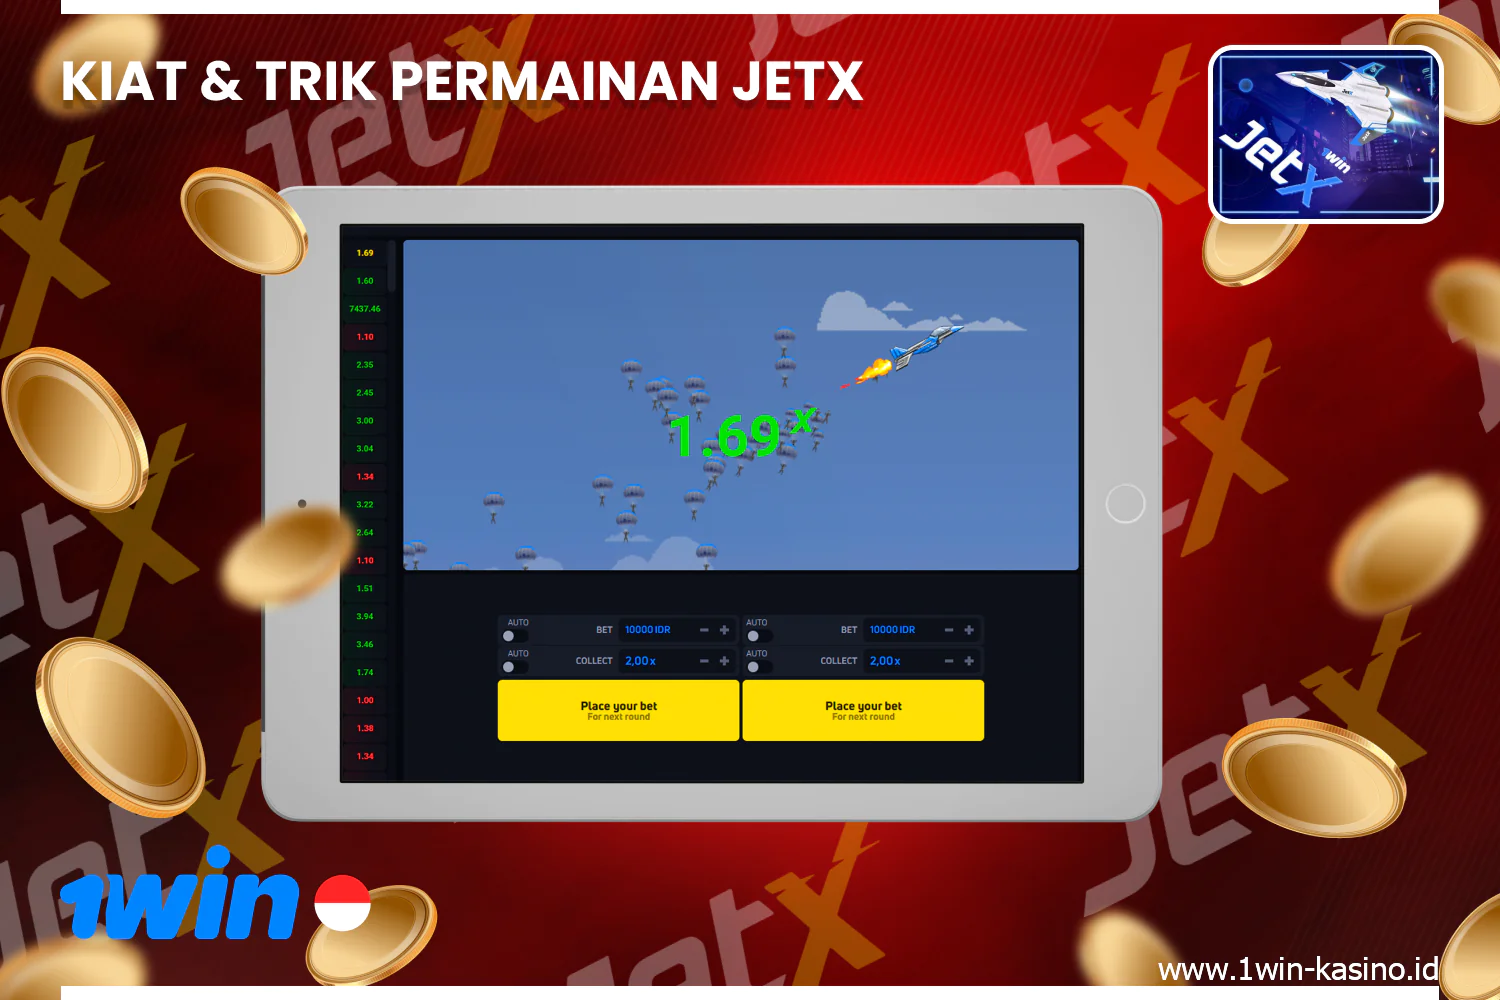 Untuk menang di JetX pada platform 1win, disarankan untuk mempelajari tips dan strategi